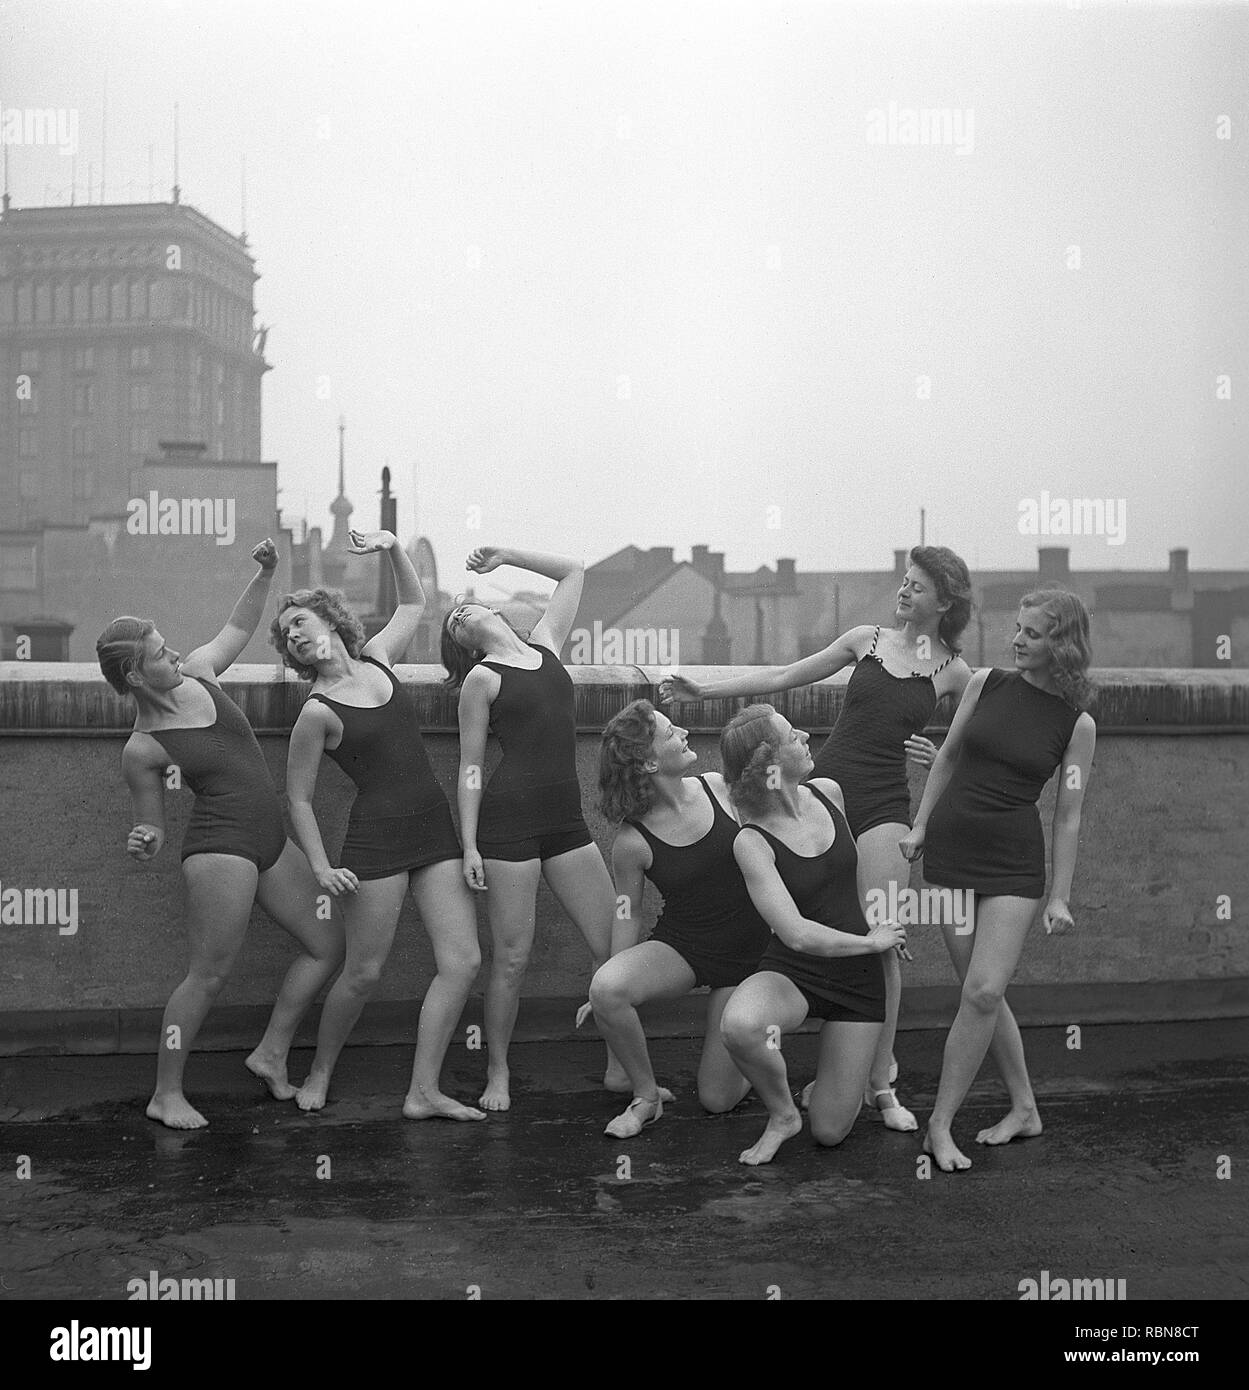 Les gymnastes, dans les années 40. Un groupe de femmes gymnastes s'entraînent ensemble sur un sommet d'un bâtiment. Photo Suède Kristoffersson Ref O7-1-6. Suède 1945 Banque D'Images